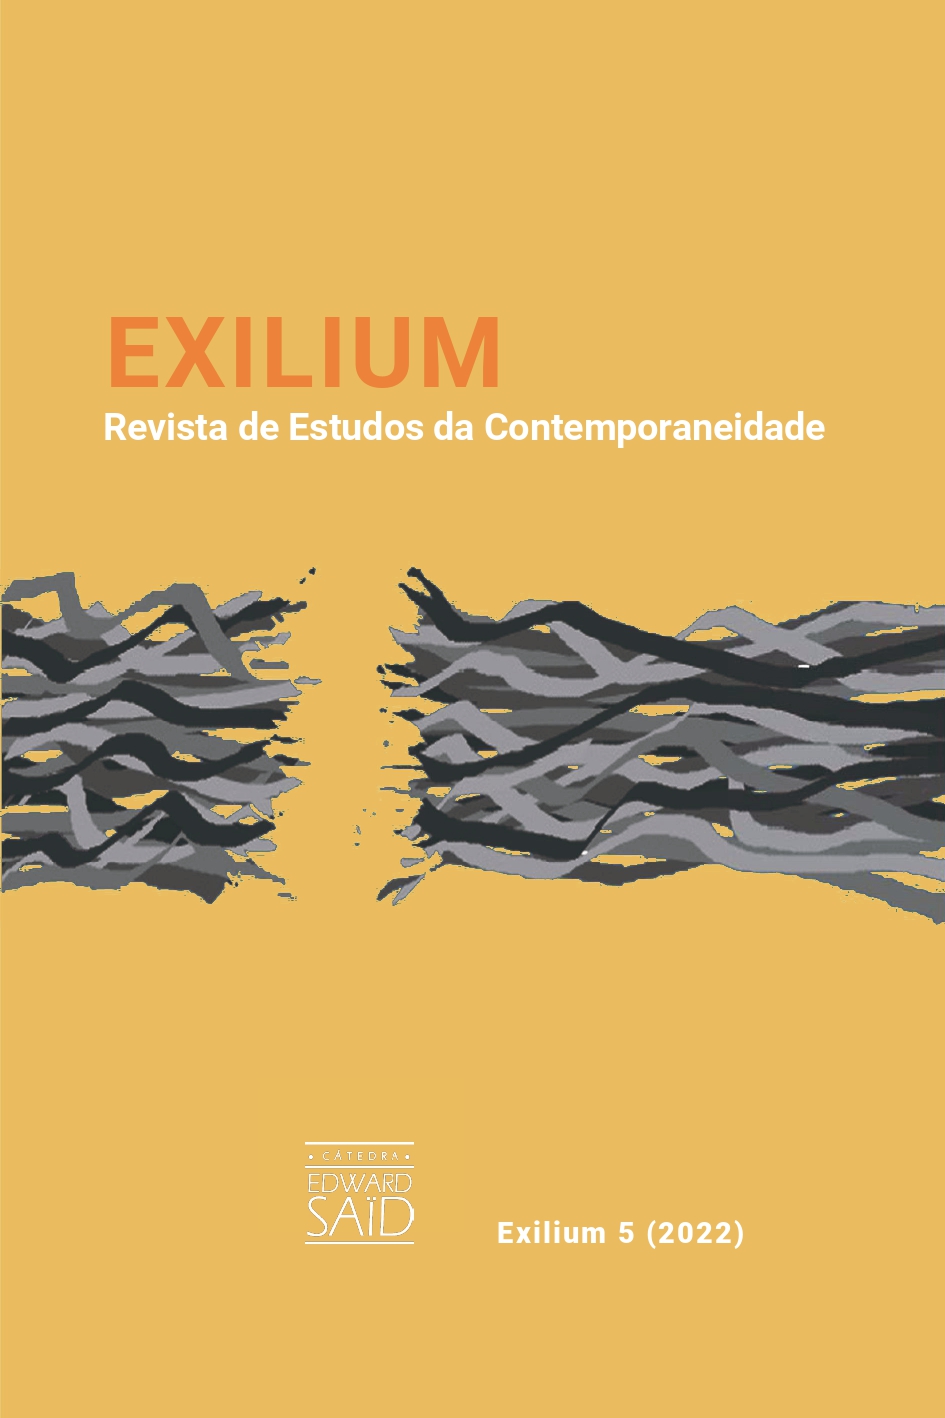 Exilium Revista de Estudos da Contemporaneidade